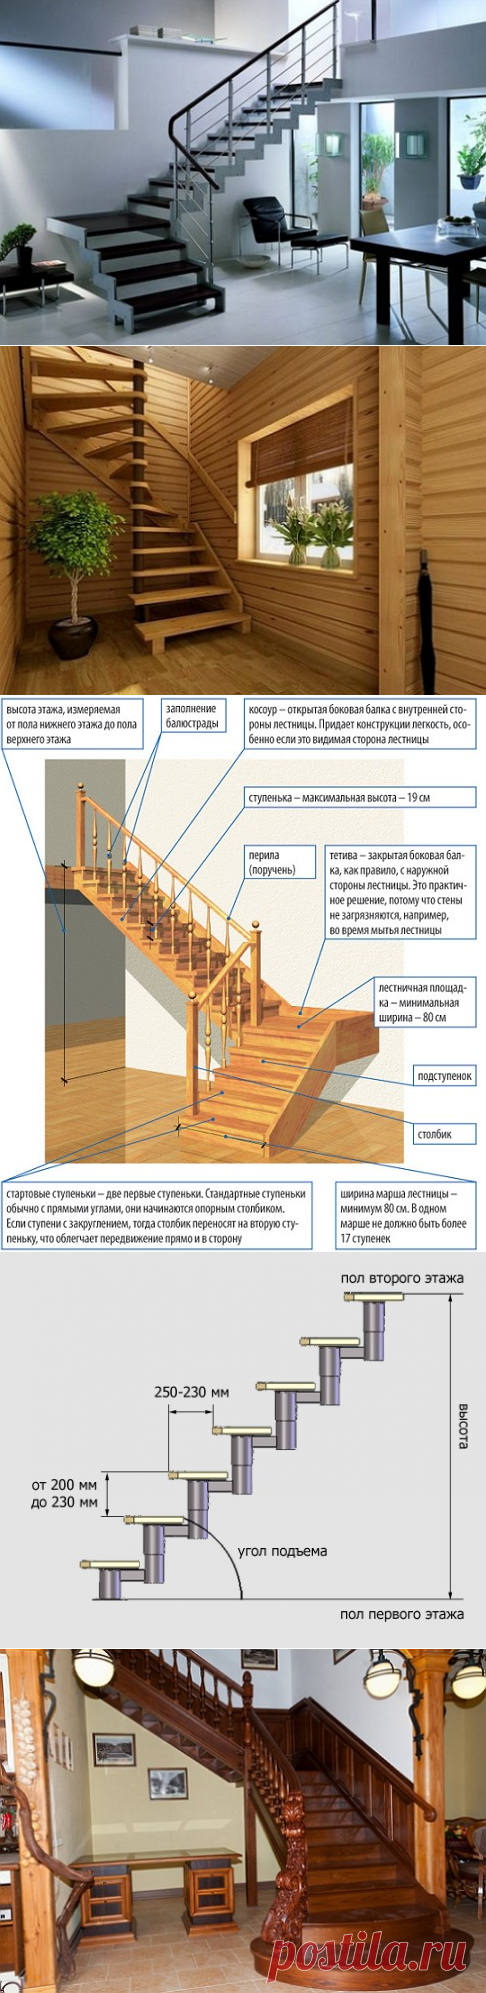 Лестница в загородном доме, пожалуйста, правила проектирования лестниц в частных домах, чертежи и расчеты лестниц частного дома. | Делаем своими руками